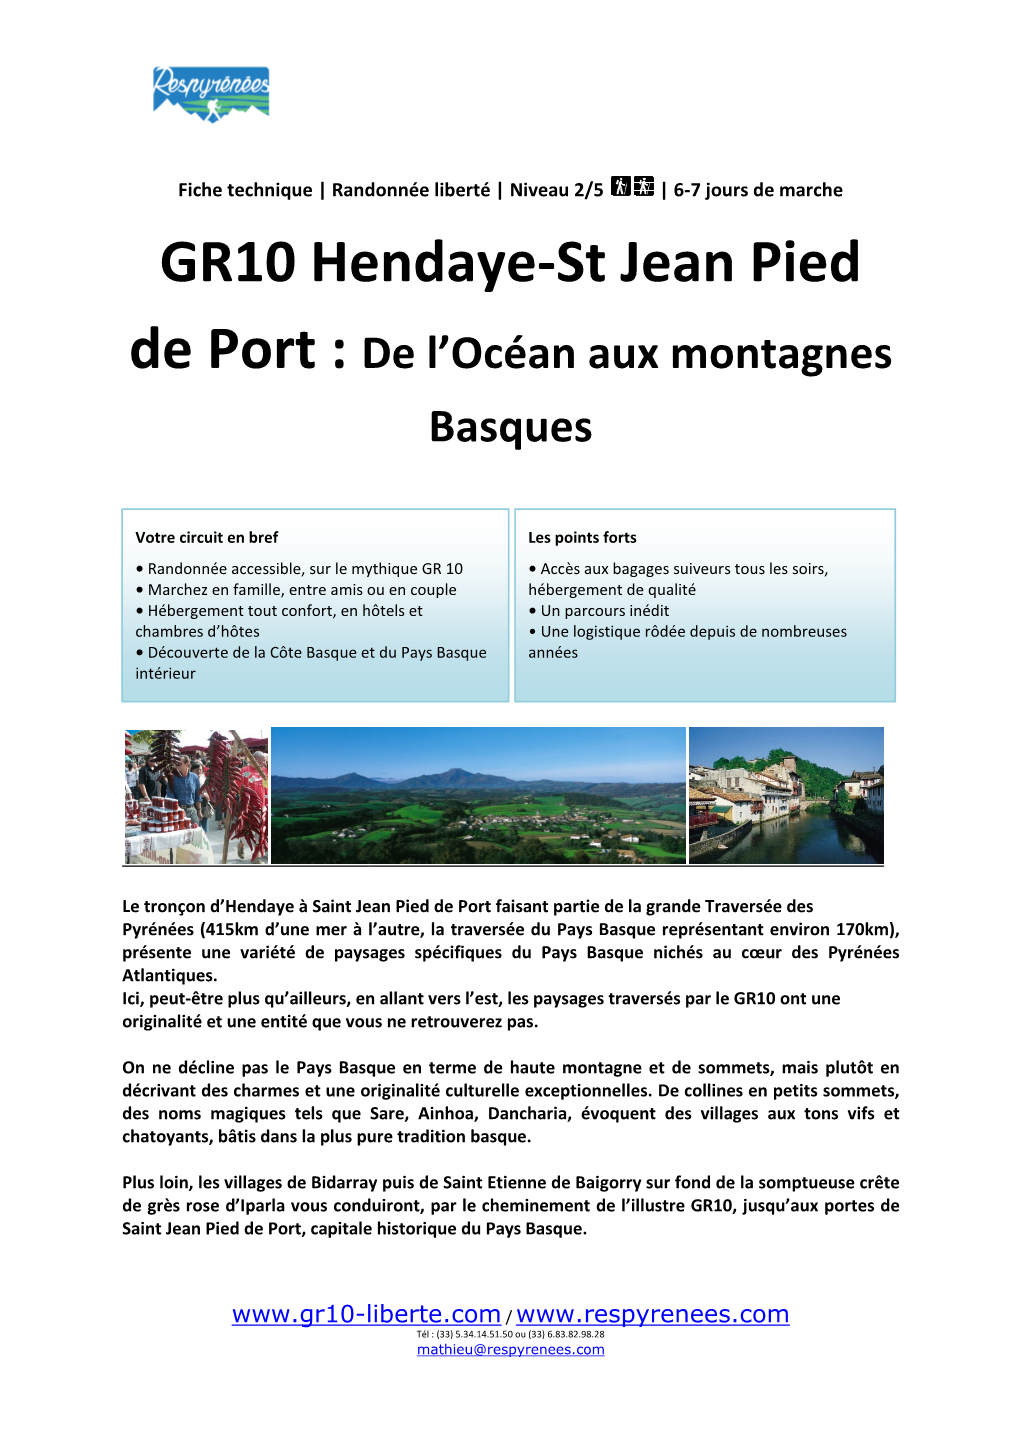 GR10 Hendaye GR10 Hendaye-St Jean Pied St Jean Pied